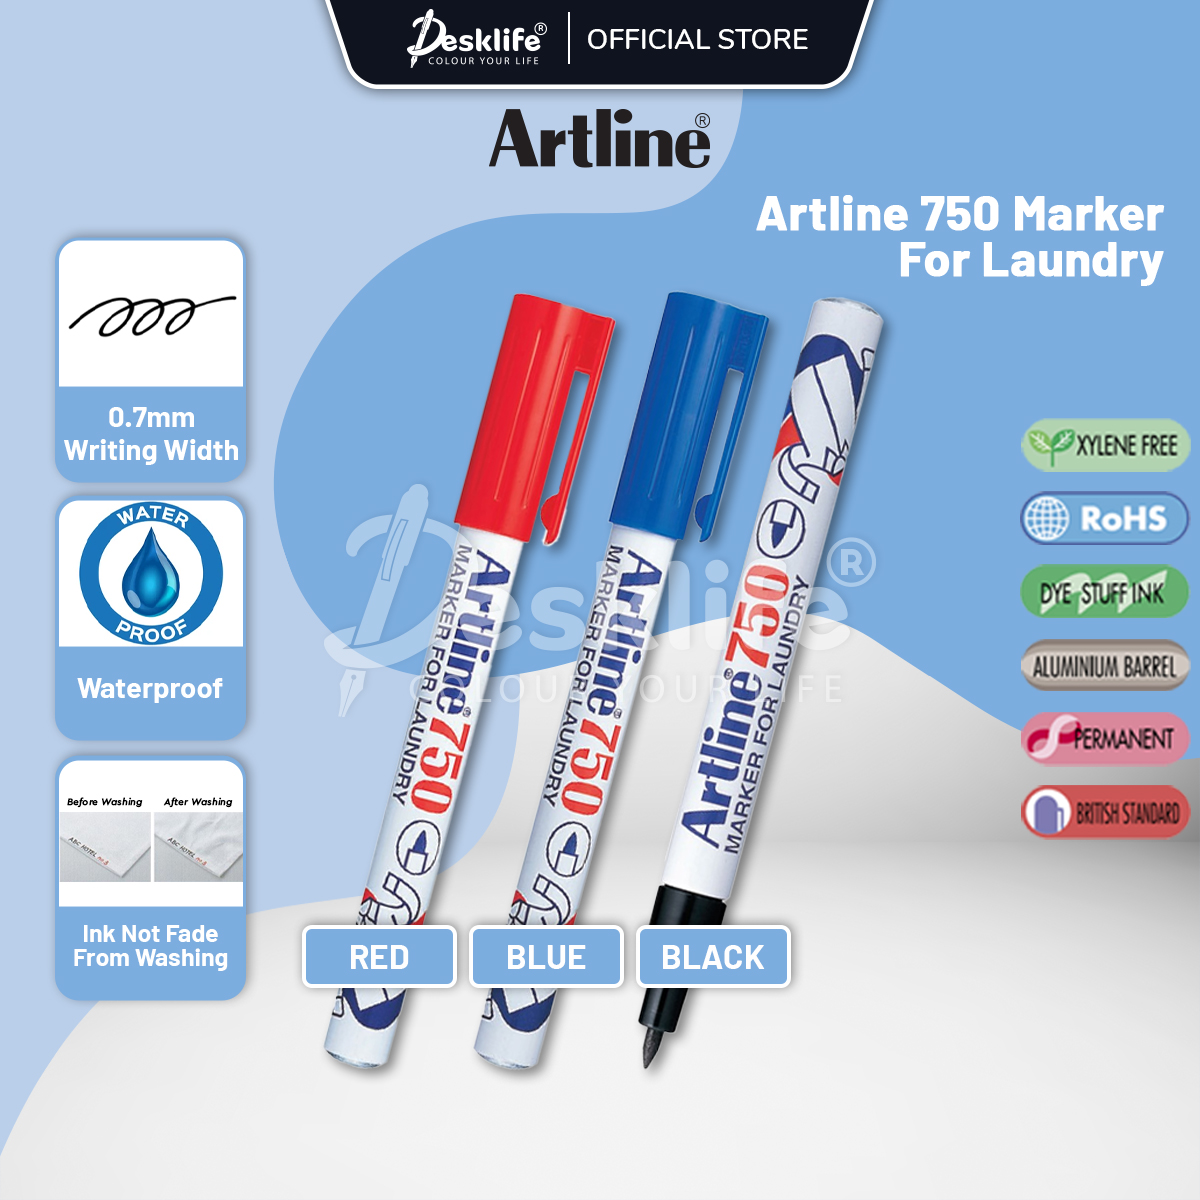 Artline Laundry Marker EK-750